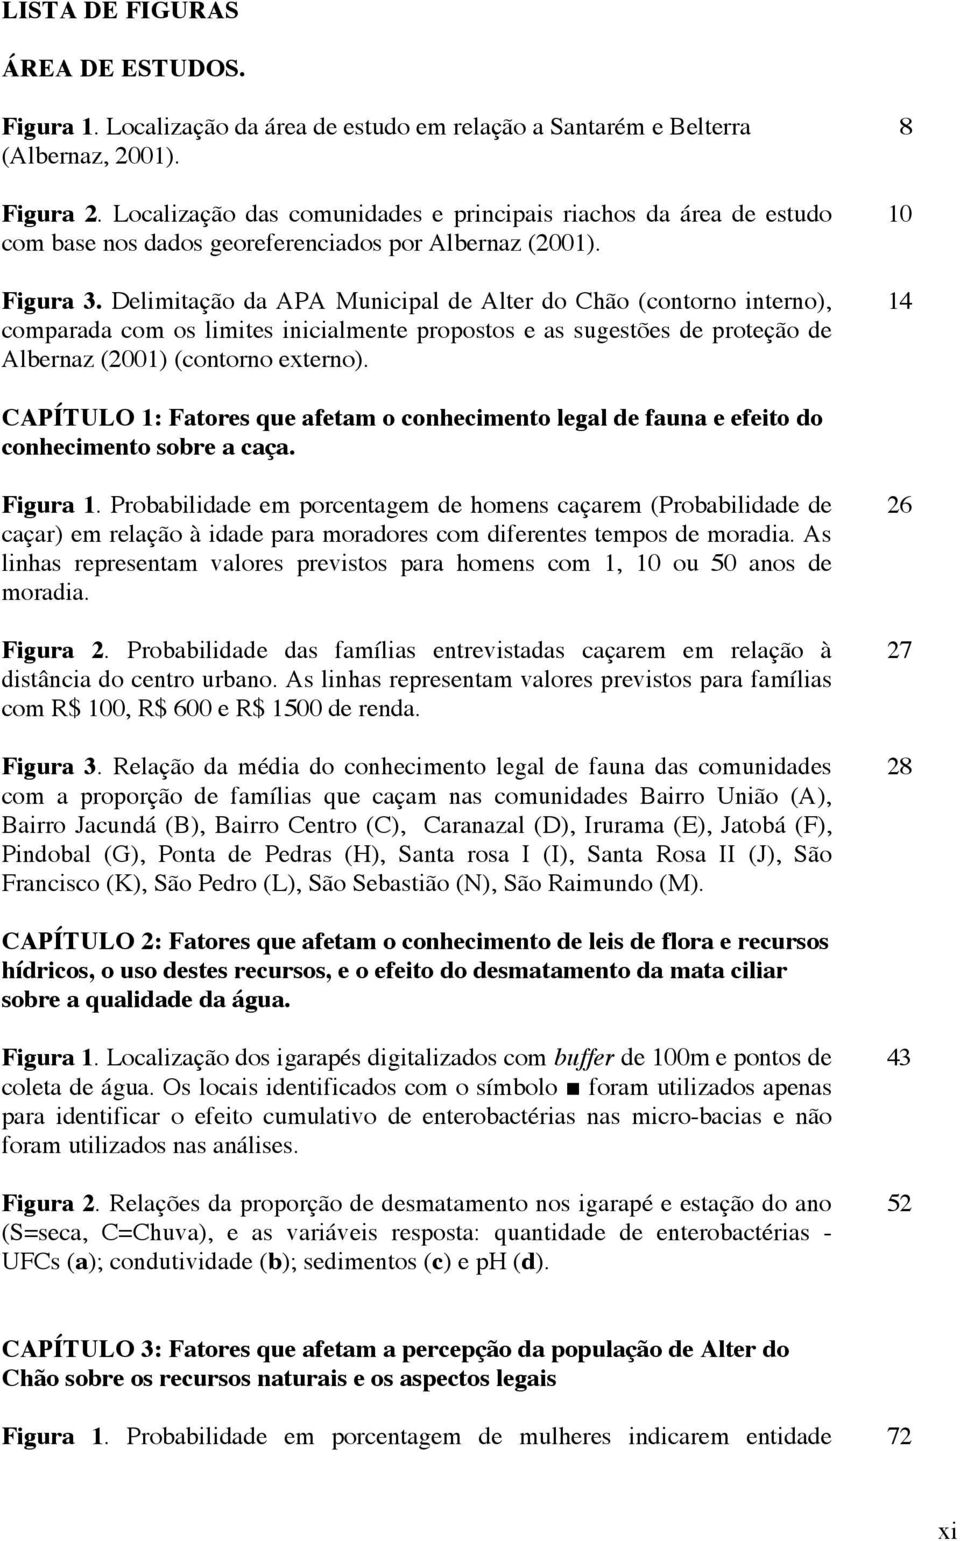 Delimitação da APA Muniipal de Alter do Chão (ontorno interno), omparada om o limite iniialmente propoto e a ugetõe de proteção de Albernaz (2001) (ontorno externo).